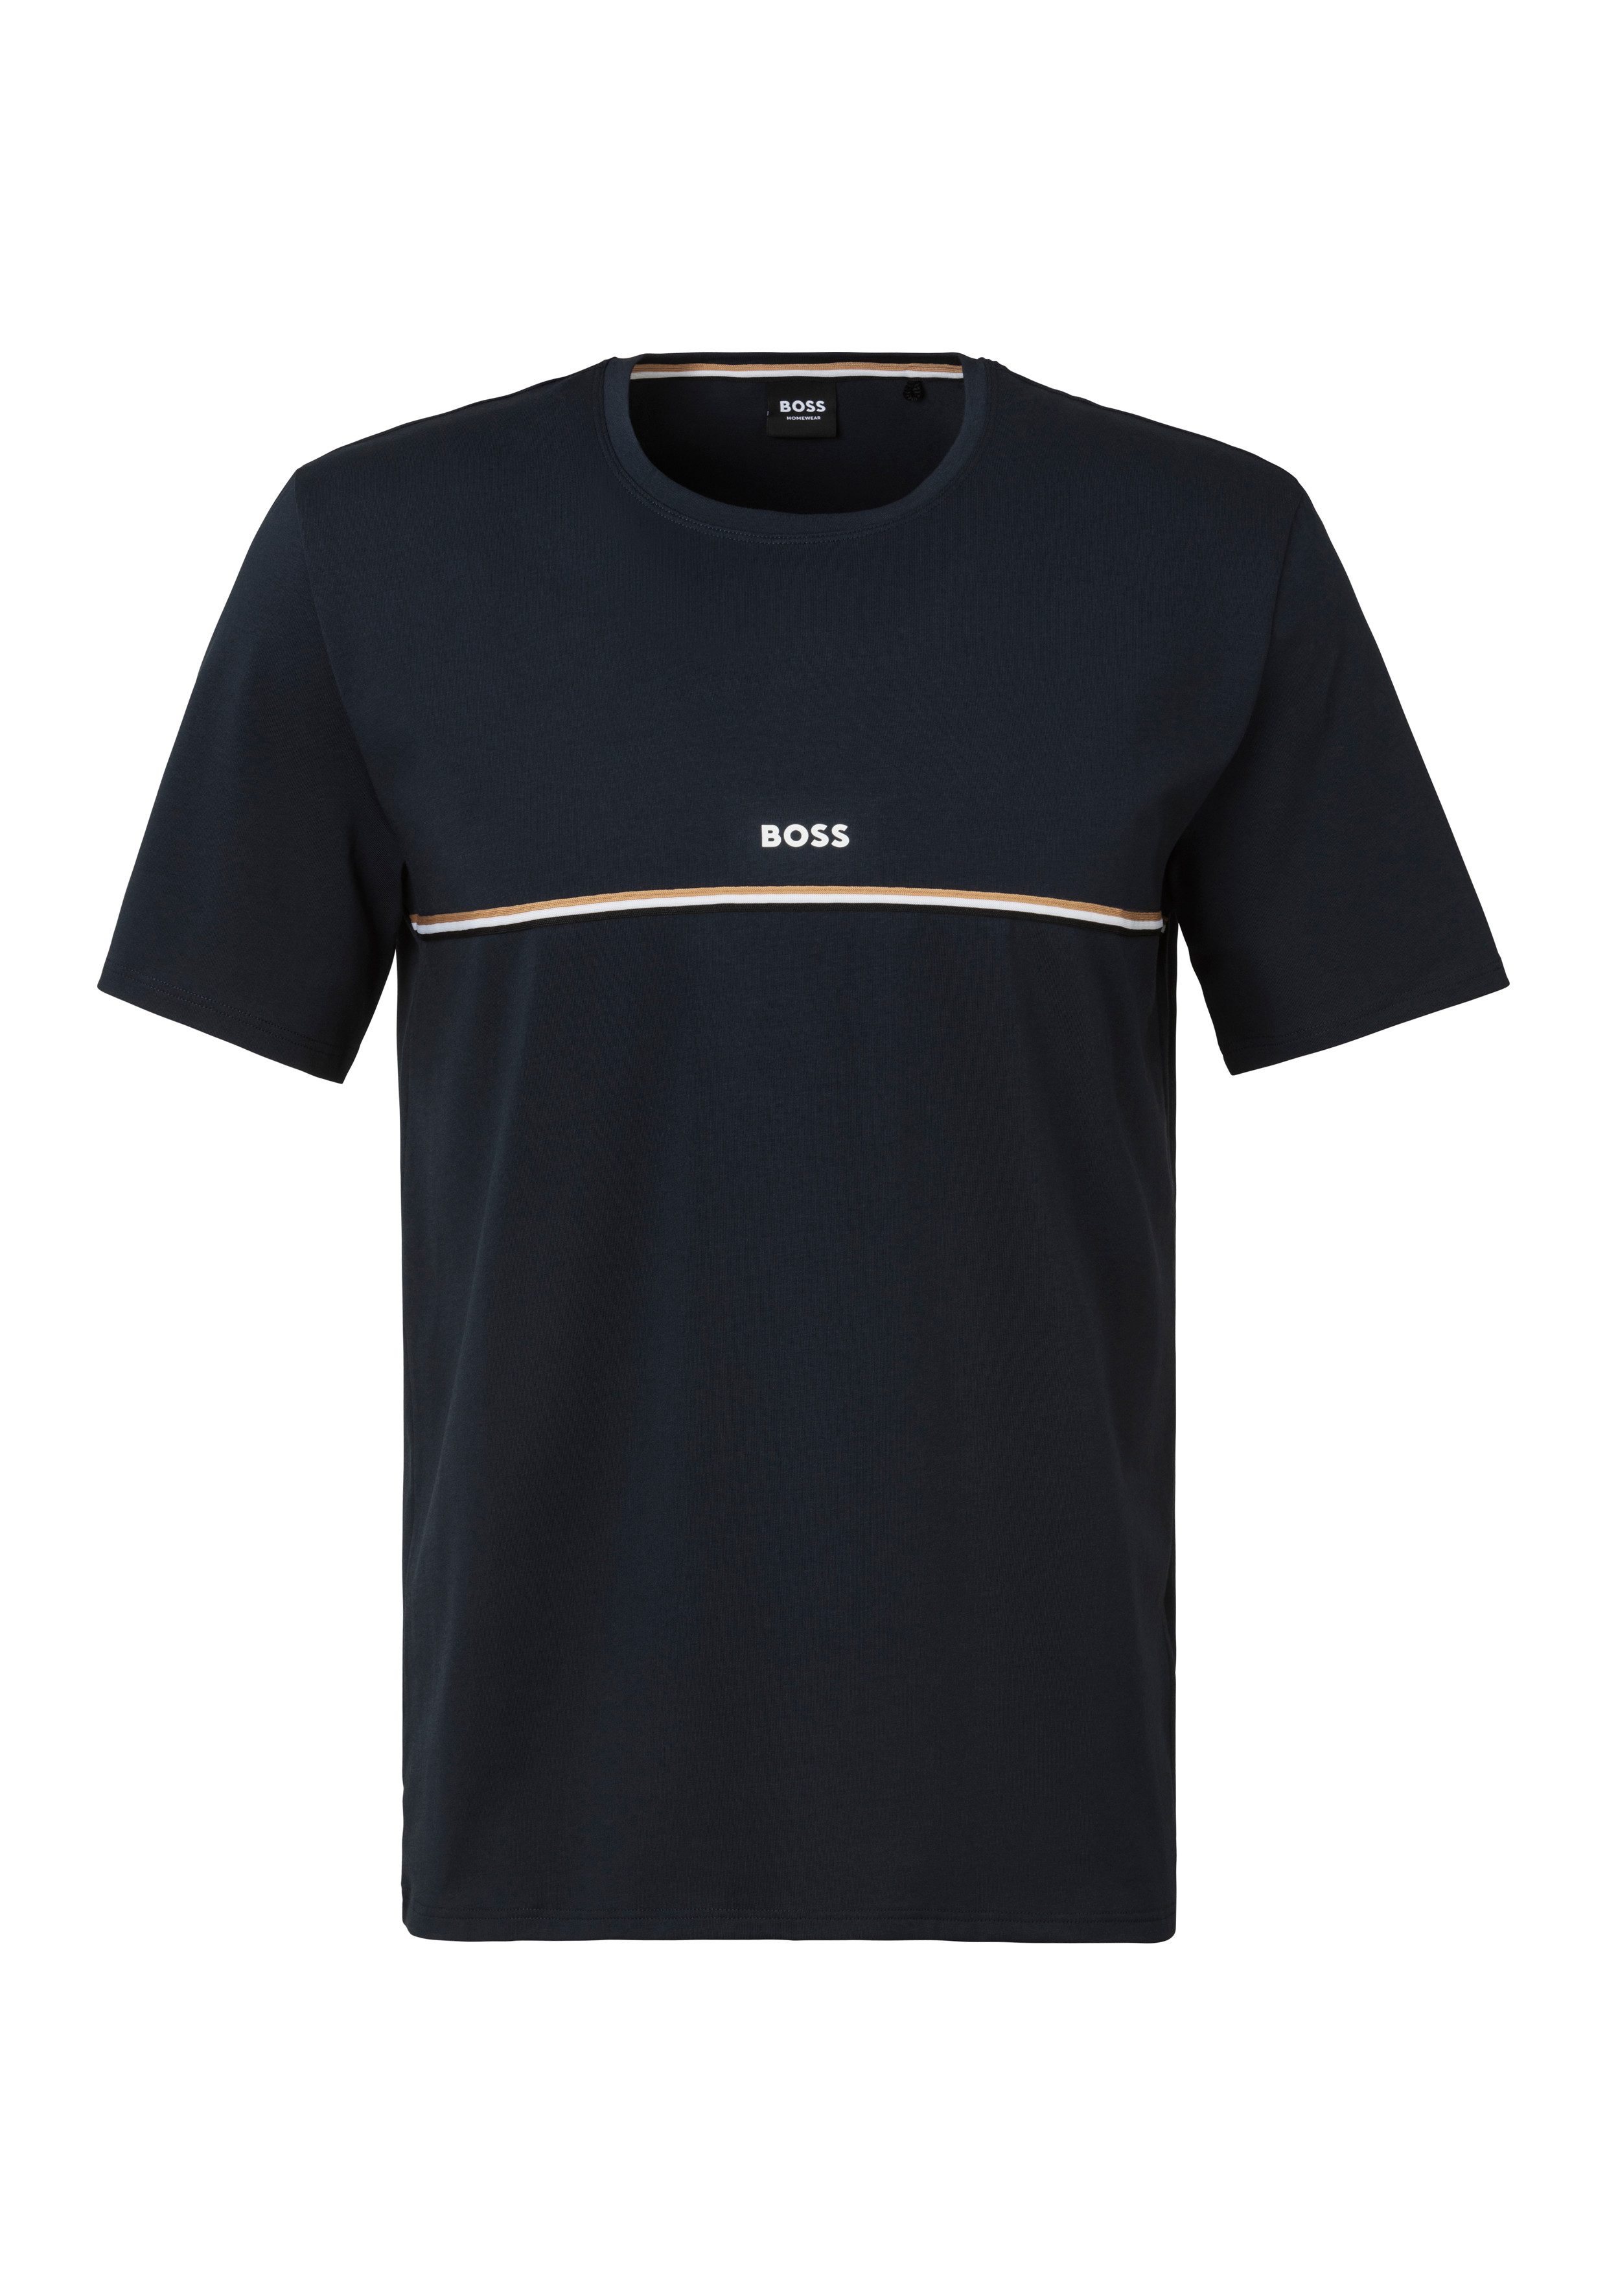 BOSS T-Shirt Unique T-Shirt mit BOSS Logodruck